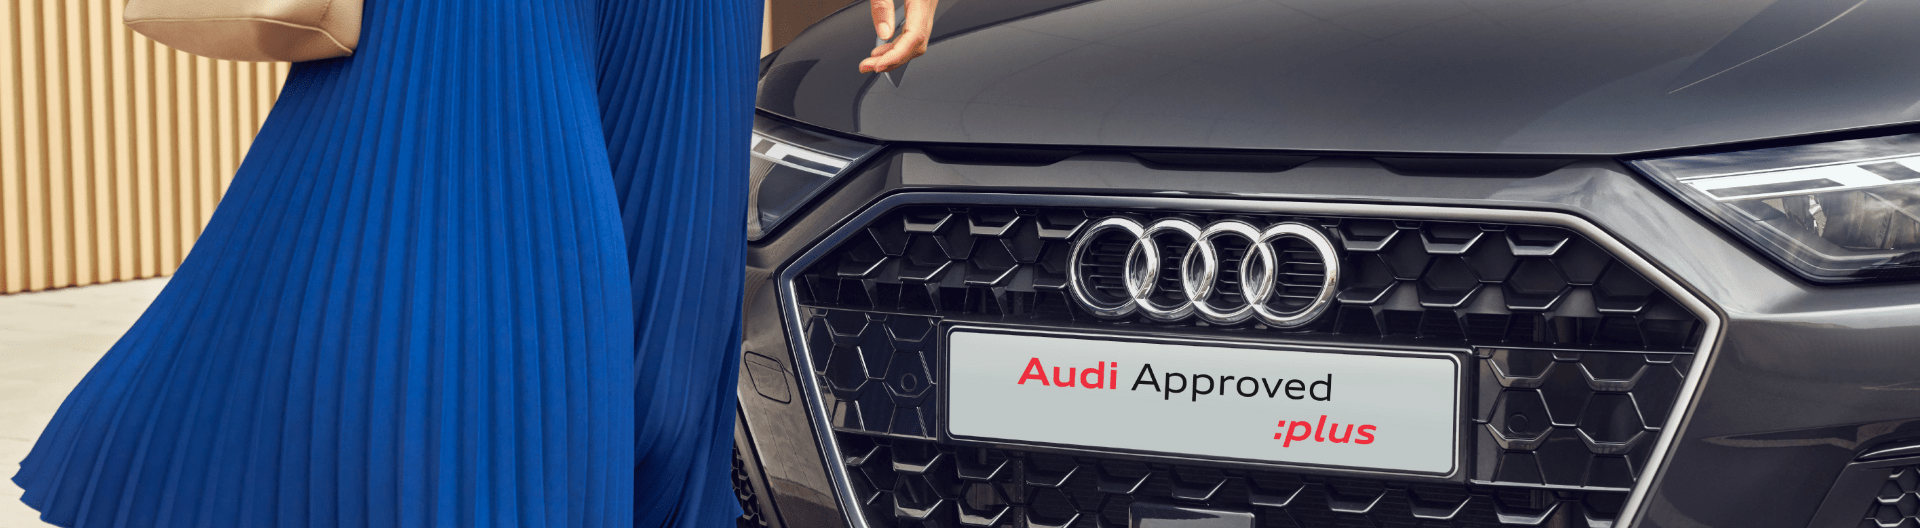 Alles wat je moet weten over het Audi Approved Plus label